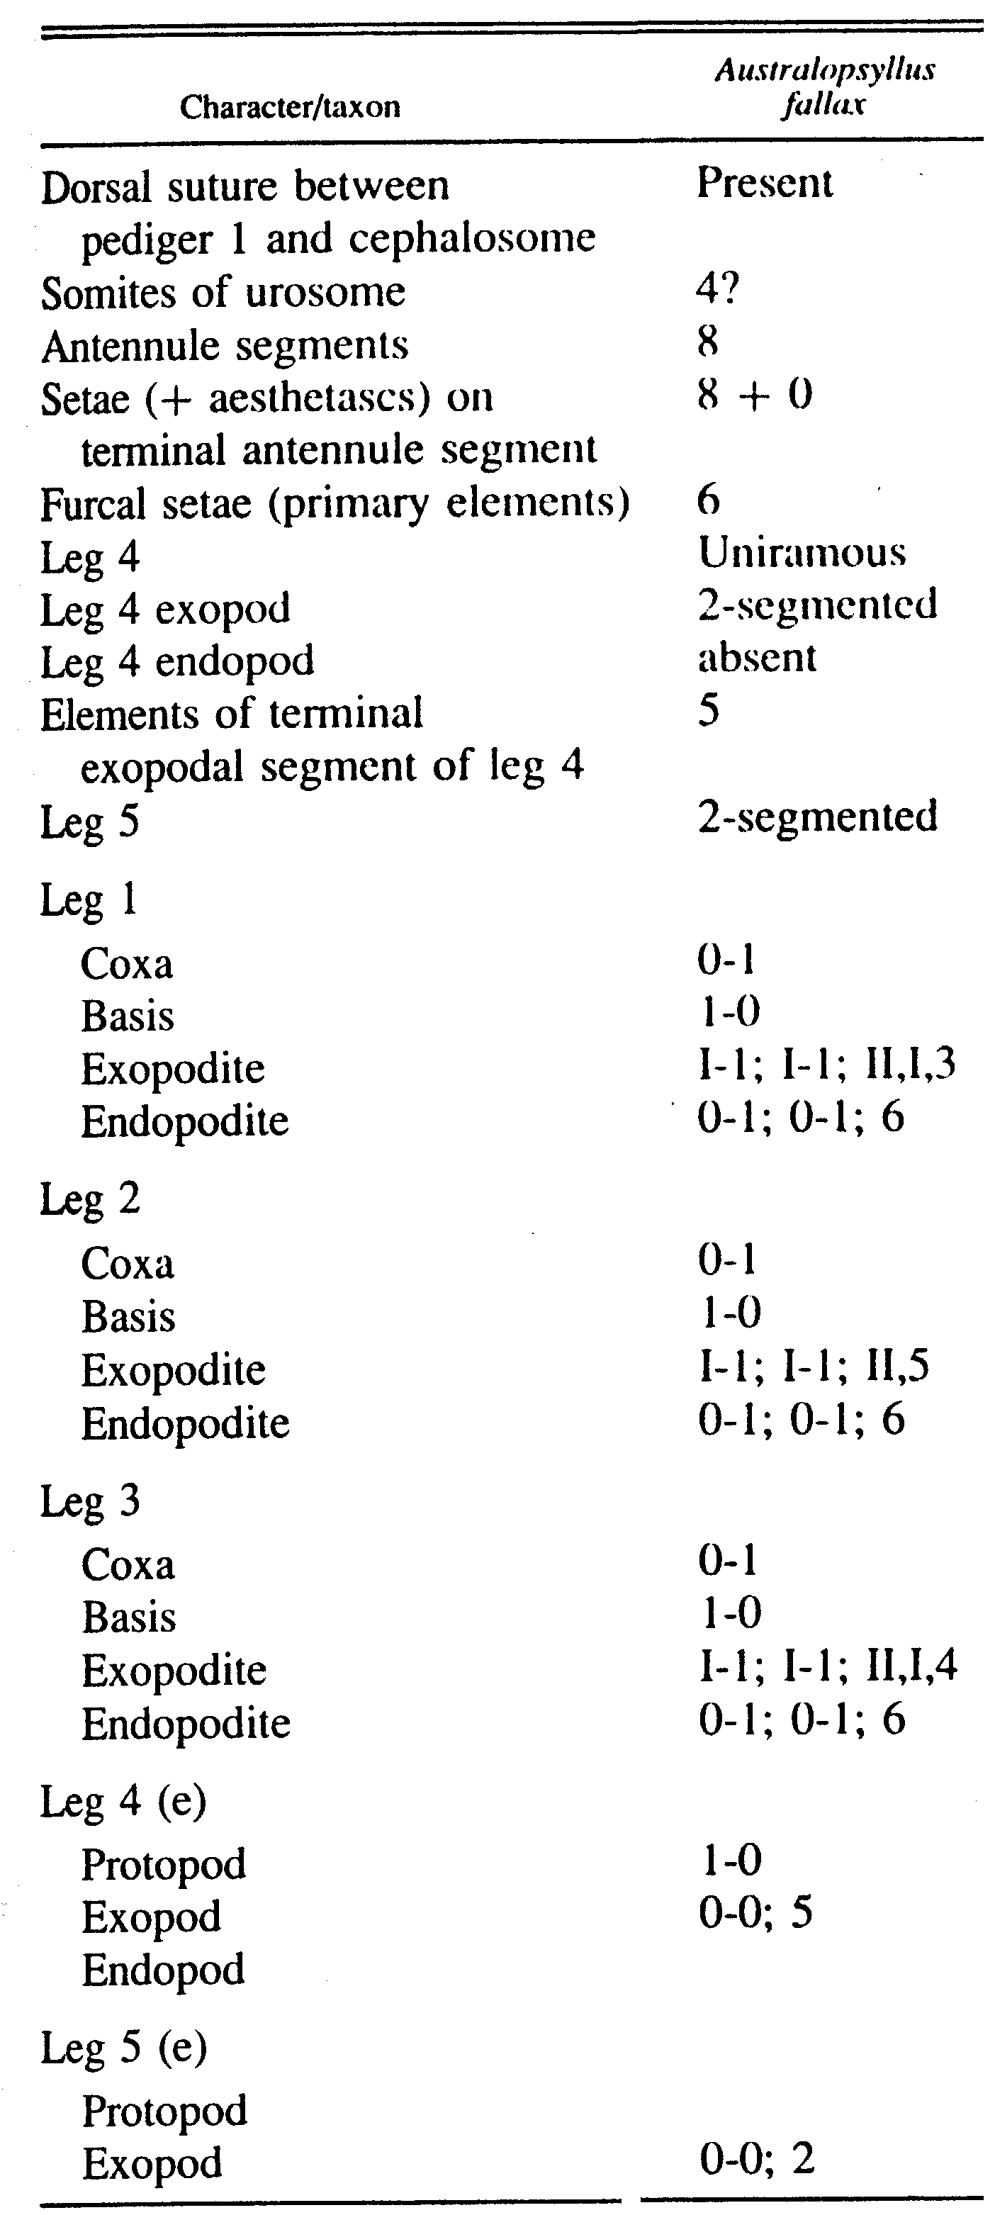 Espèce Australopsyllus fallax - Planche 4 de figures morphologiques